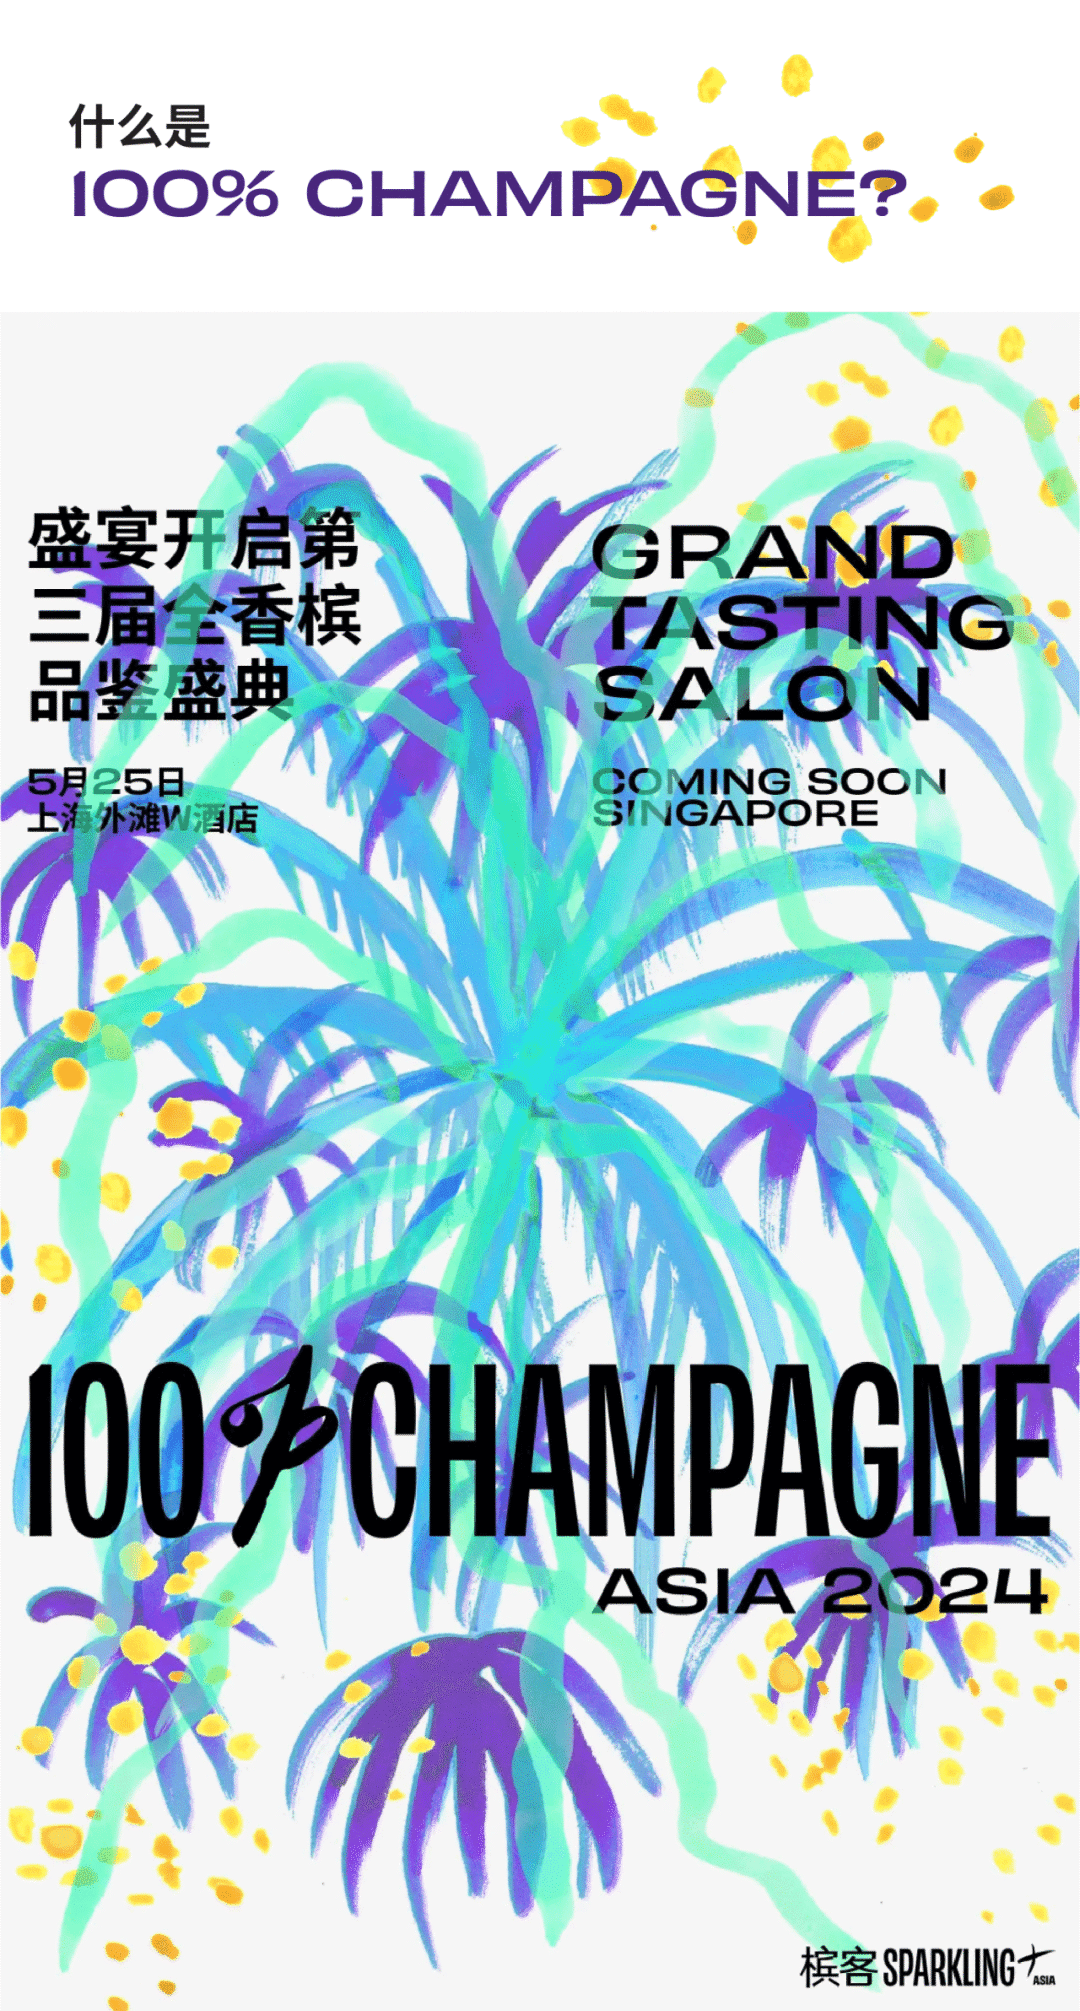 100% CHAMPAGNE China 2024，属于香槟客的周末狂欢！